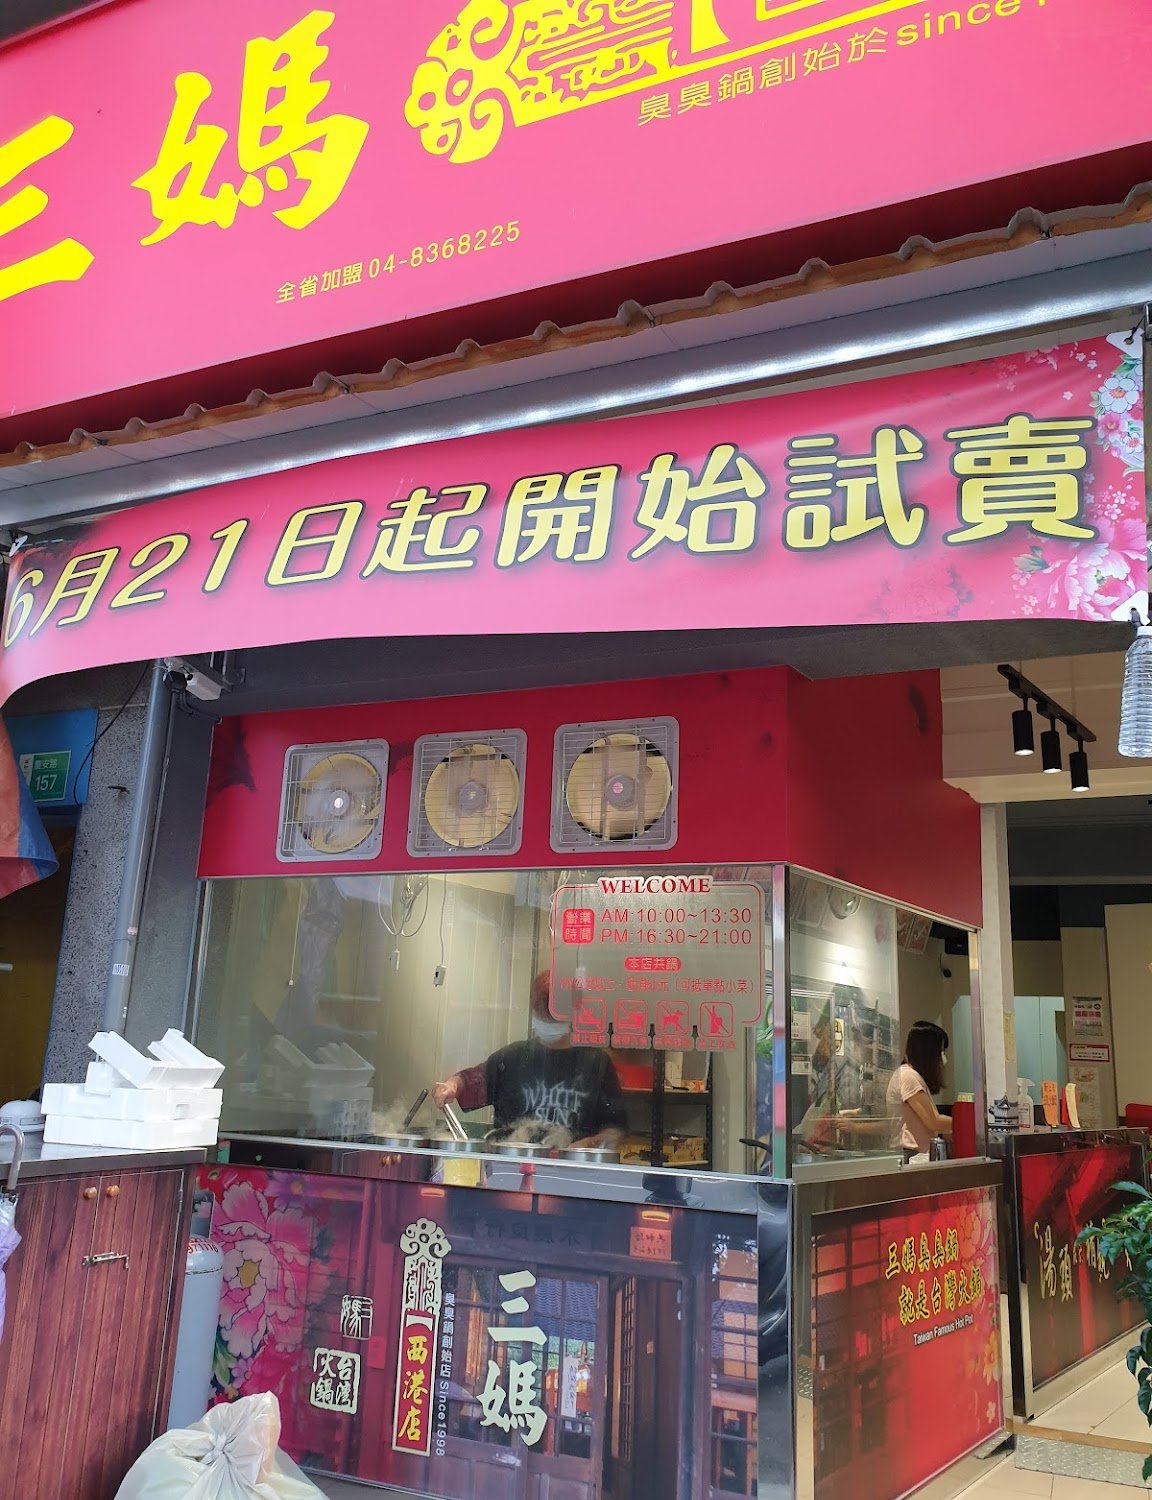 台北珍味臭臭鍋 吳興店的餐點外送 | 價目表和價格 | Uber Eats